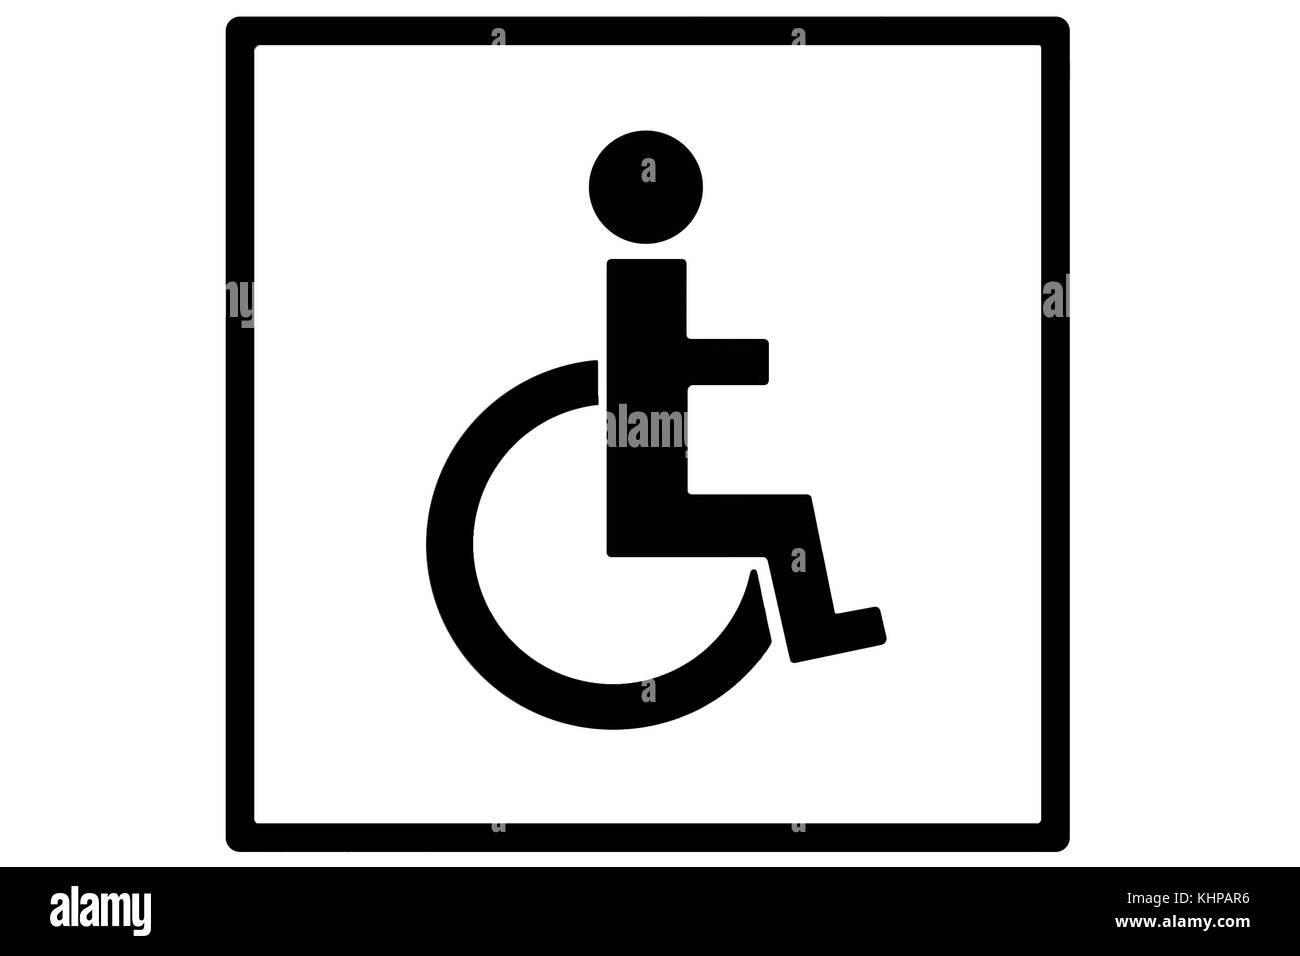 Ein Schild oder ein Schild, das eine Person im Rollstuhl in schwarzer Silhouette auf weiß in einem quadratischen schwarzen Kasten als Behindertenschild oder Behindertenschild darstellt Stockfoto